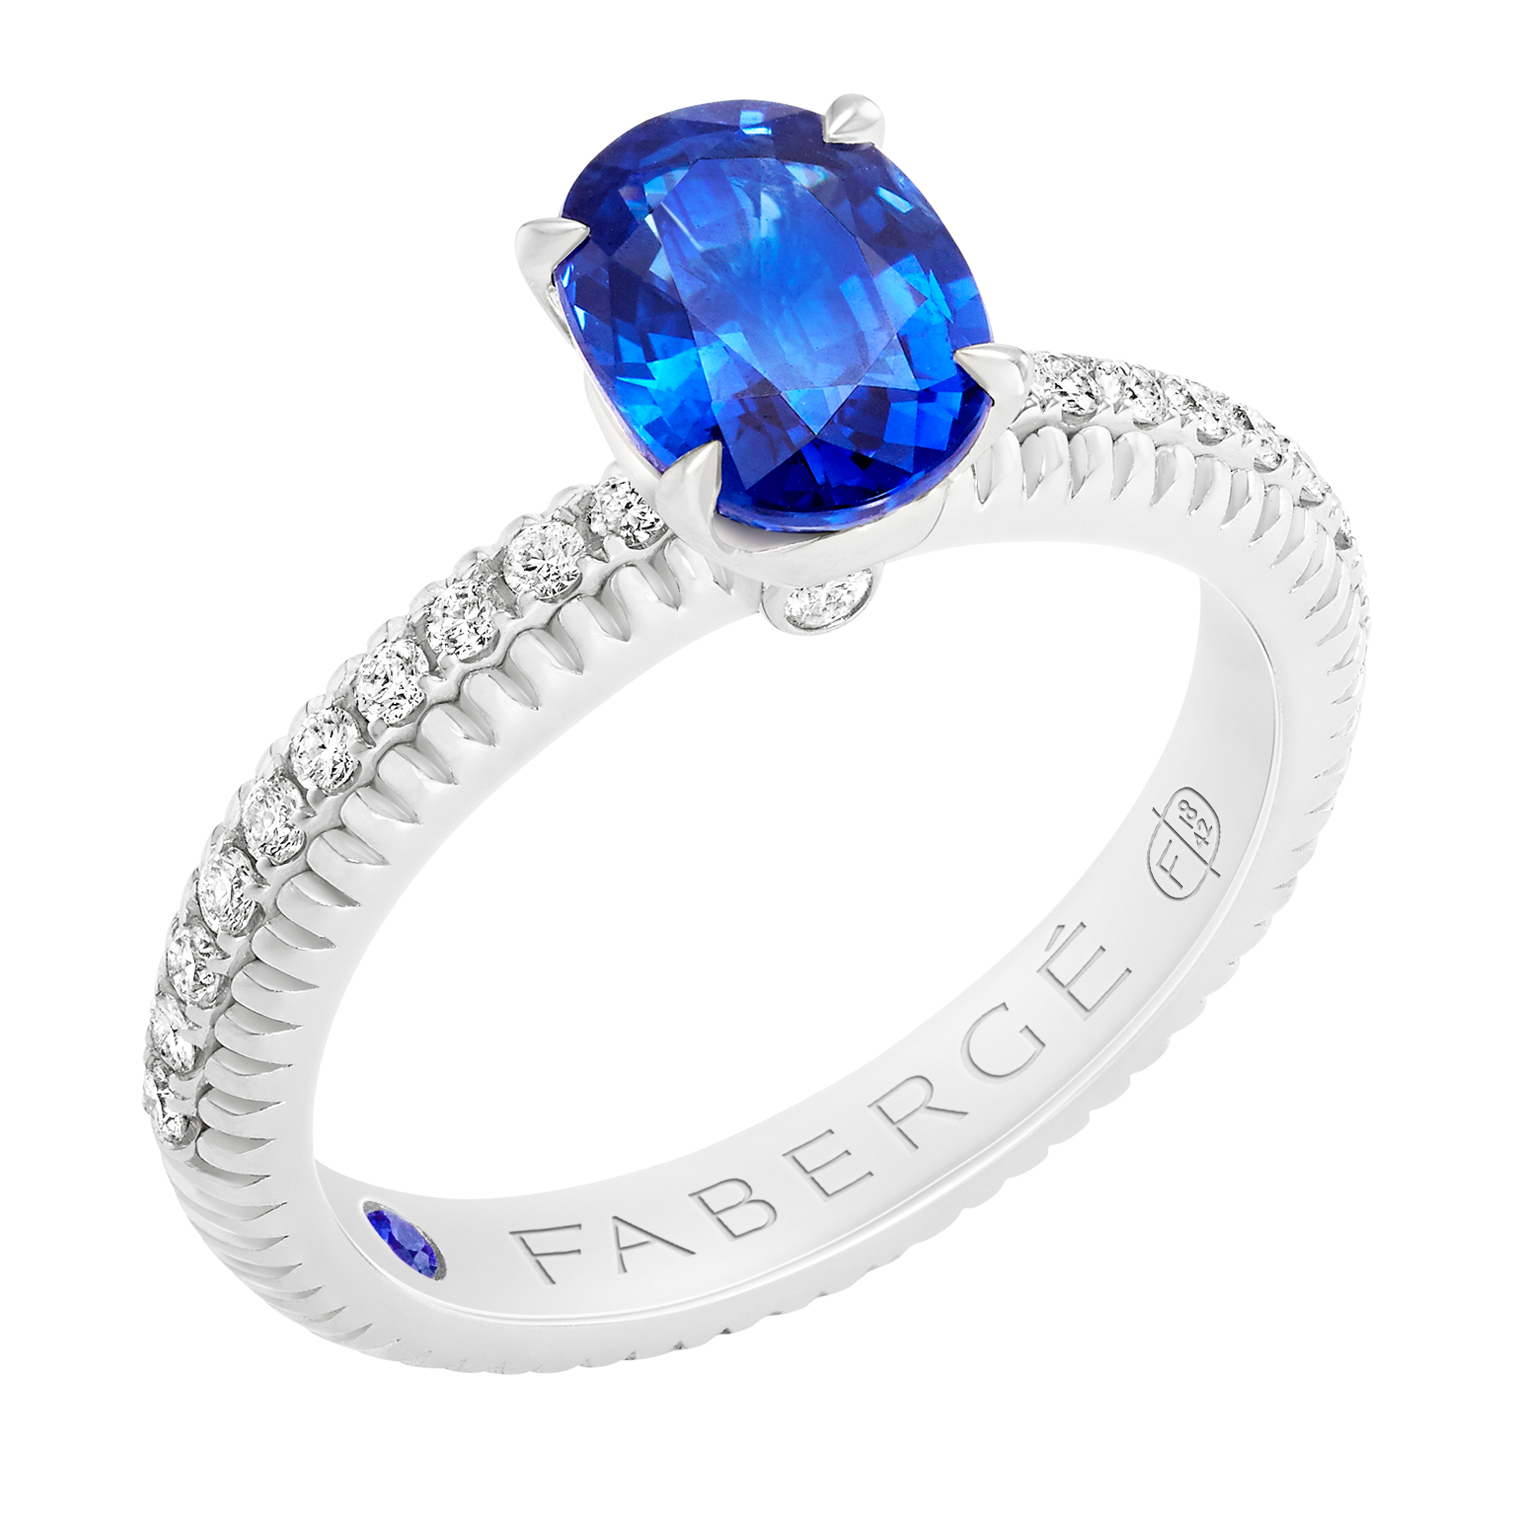 Fabergé法贝热三色之爱系列海蓝宝石戒指